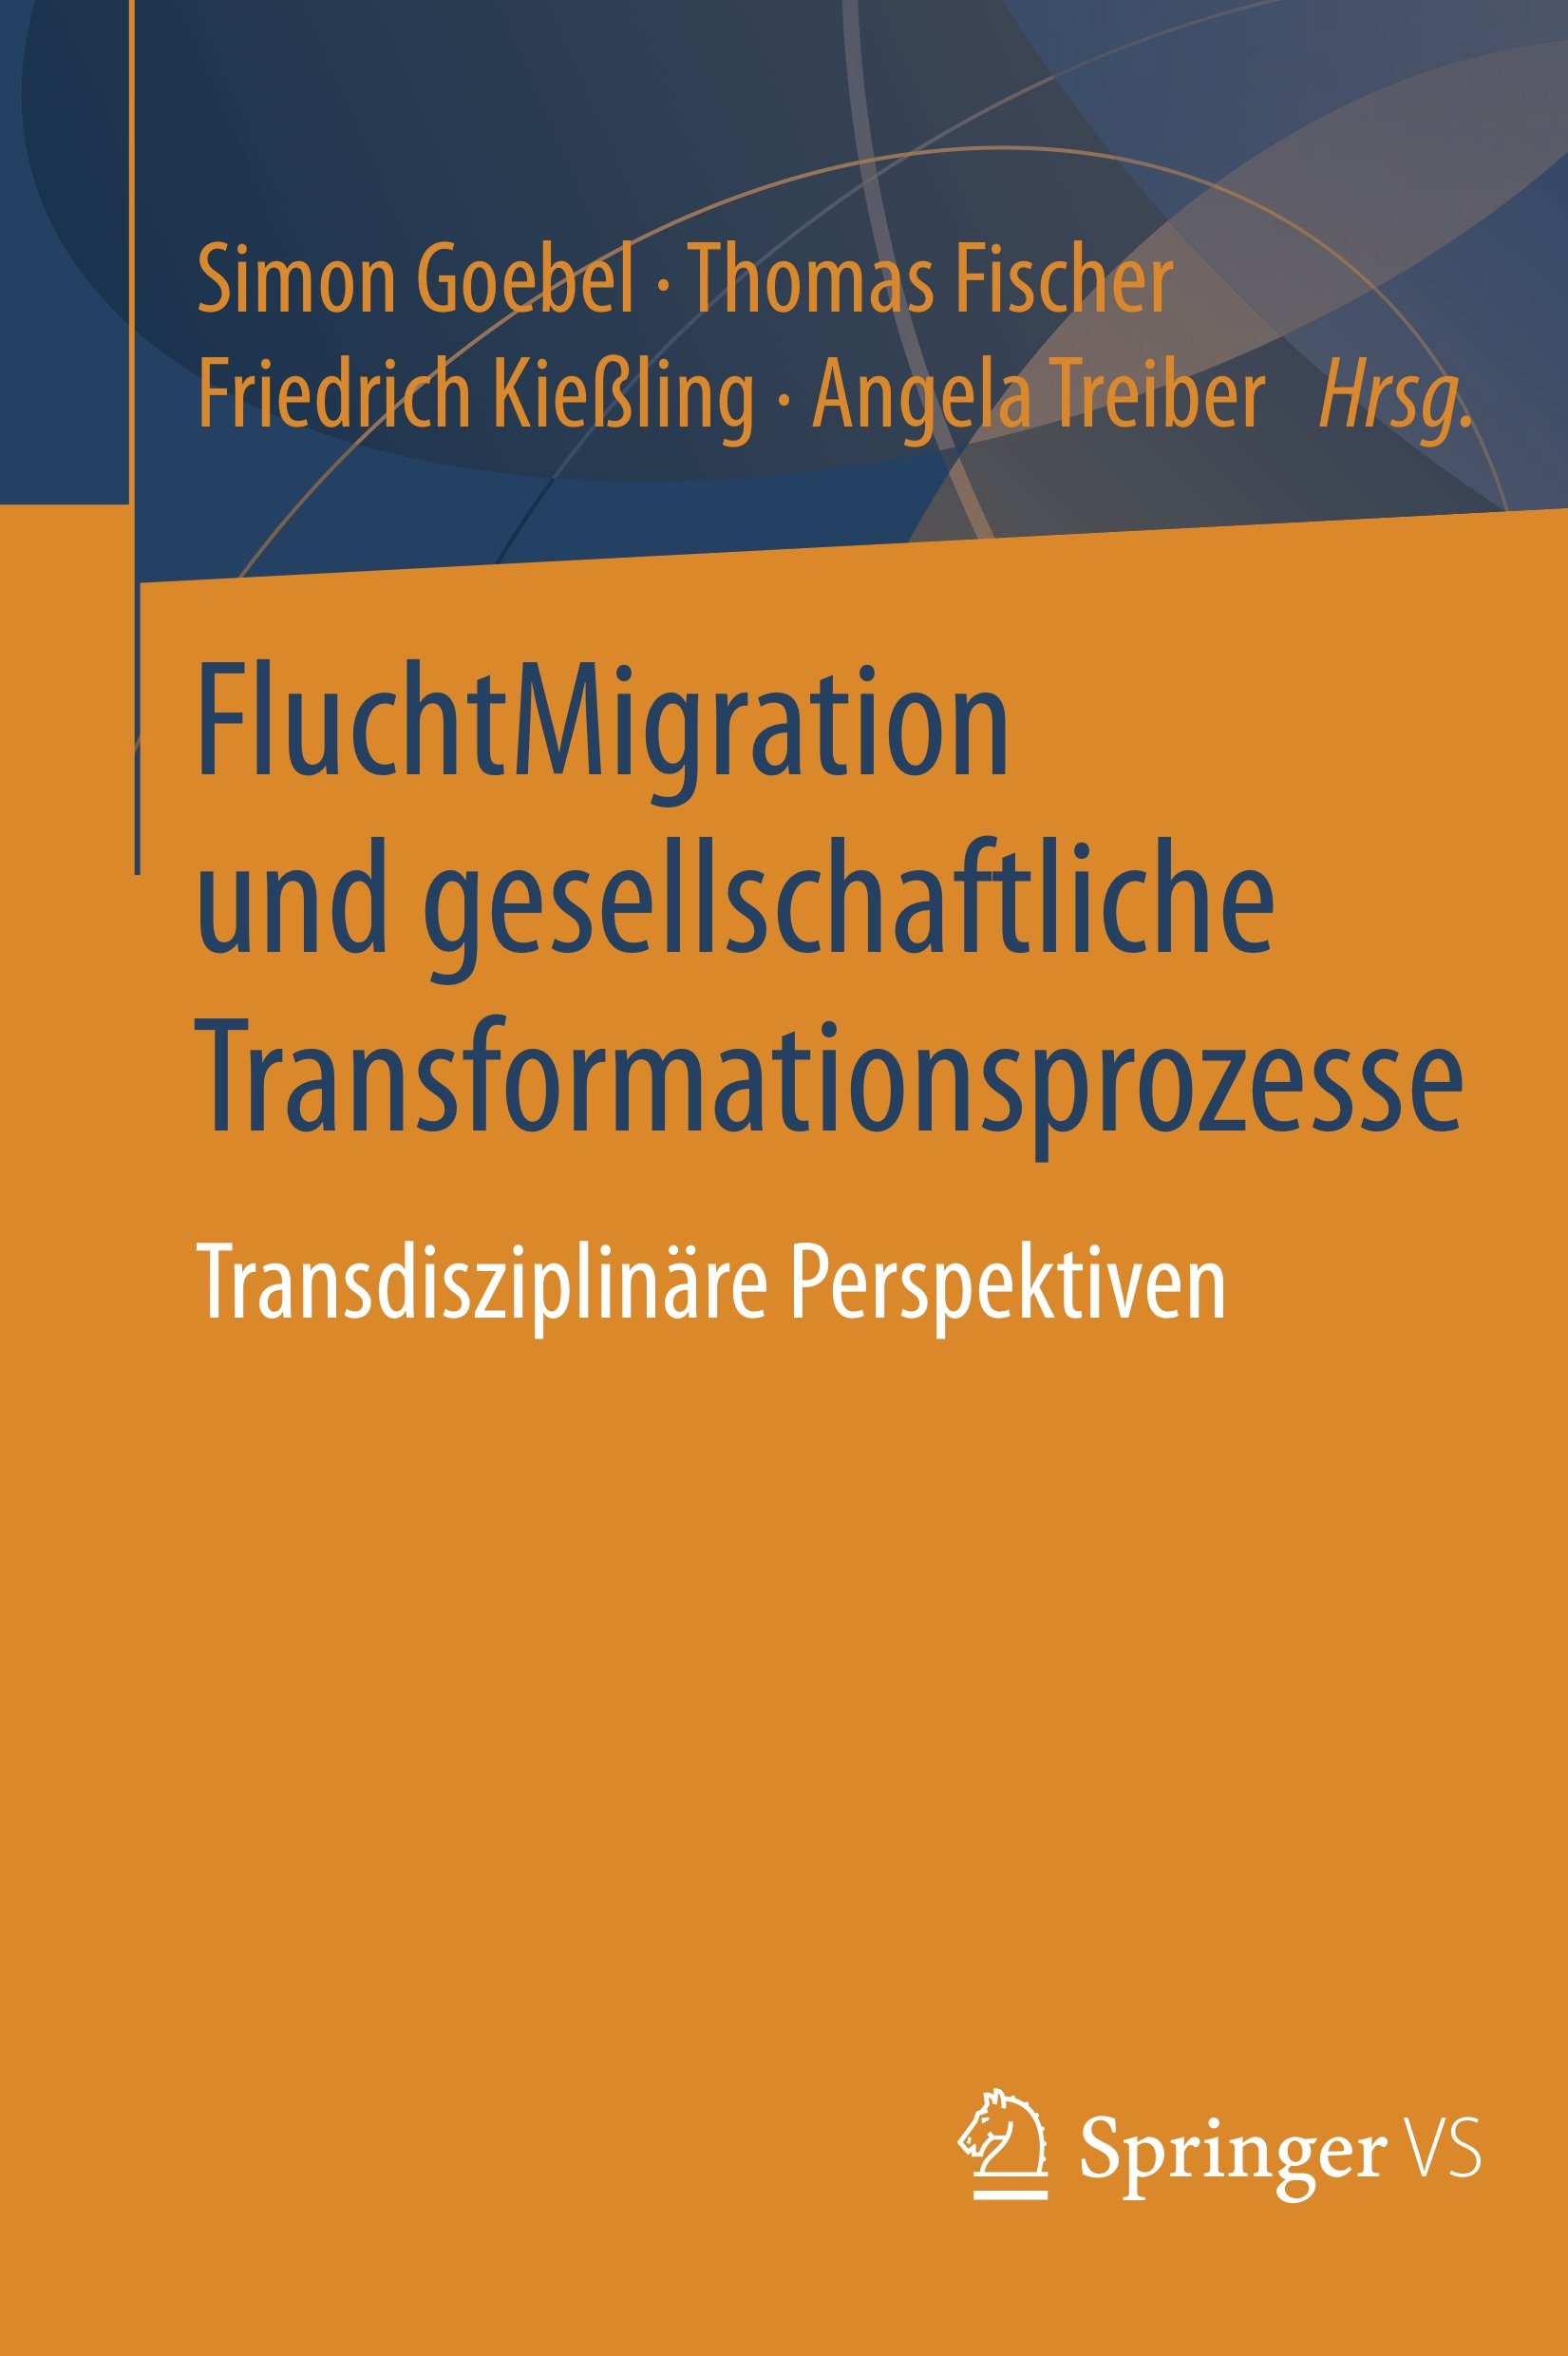 Publikation: FluchtMigration und gesellschaftliche Transformationsprozesse